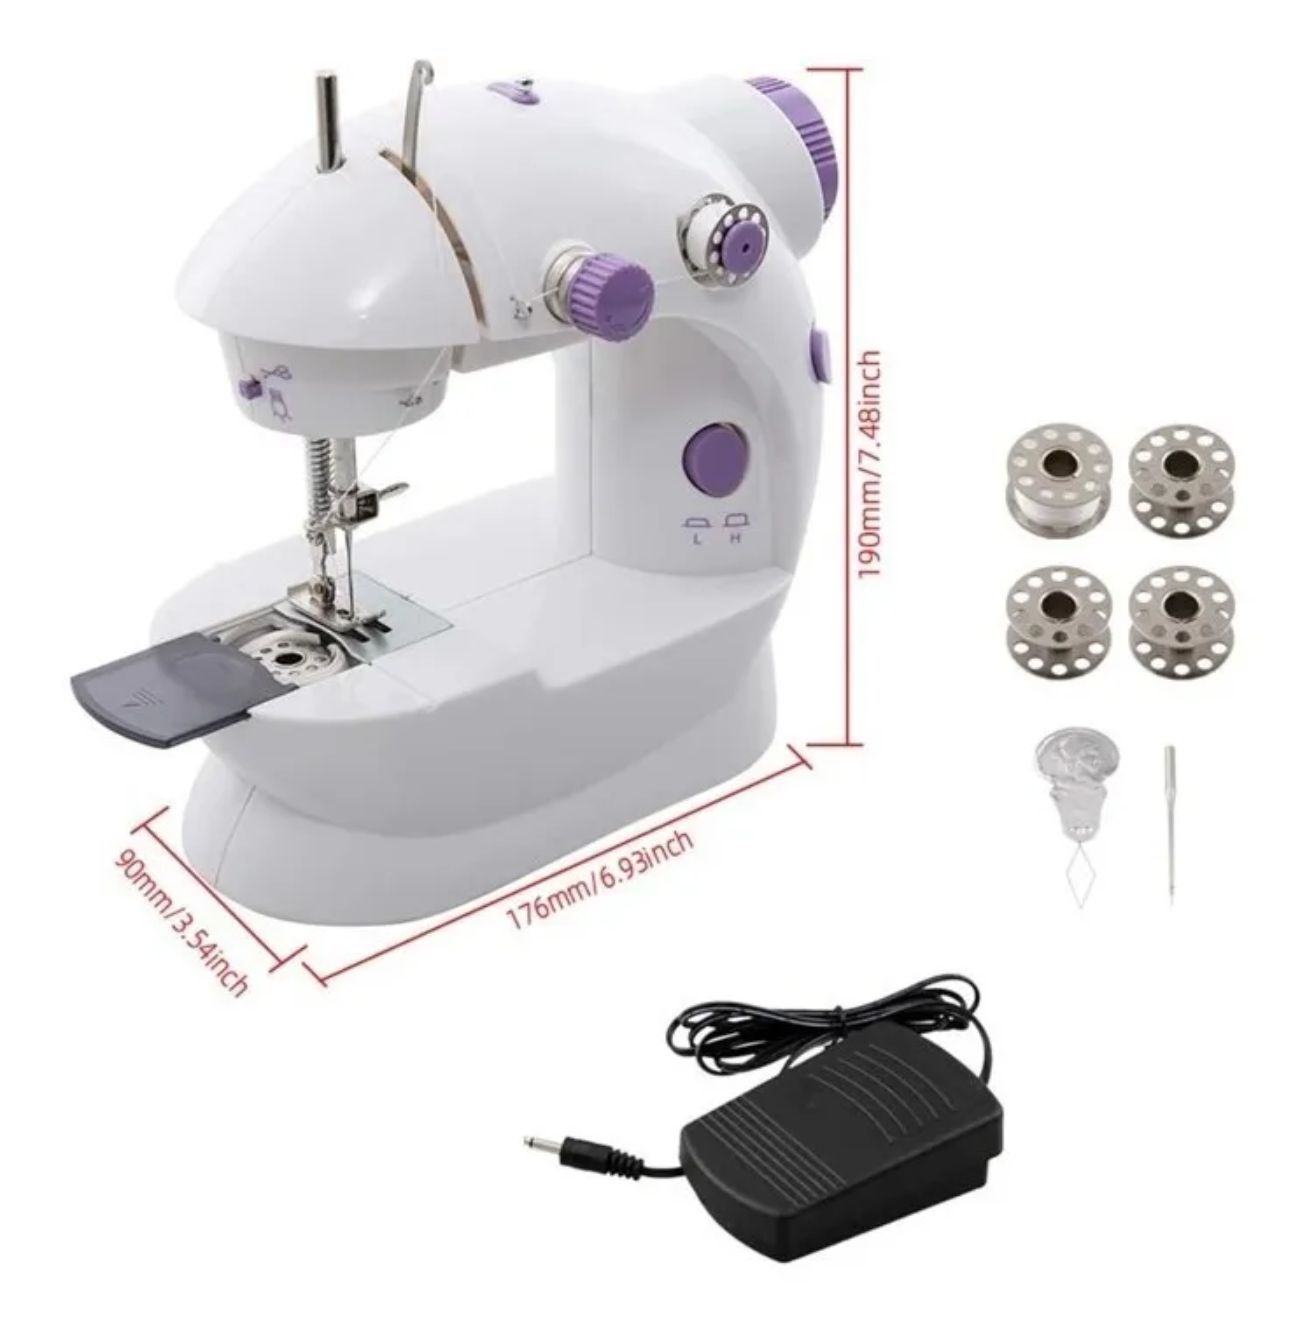  Drfeify Juguete de máquina de coser para niños, máquina de coser  eléctrica portátil de tamaño mediano, juguetes para niños principiantes :  Juguetes y Juegos